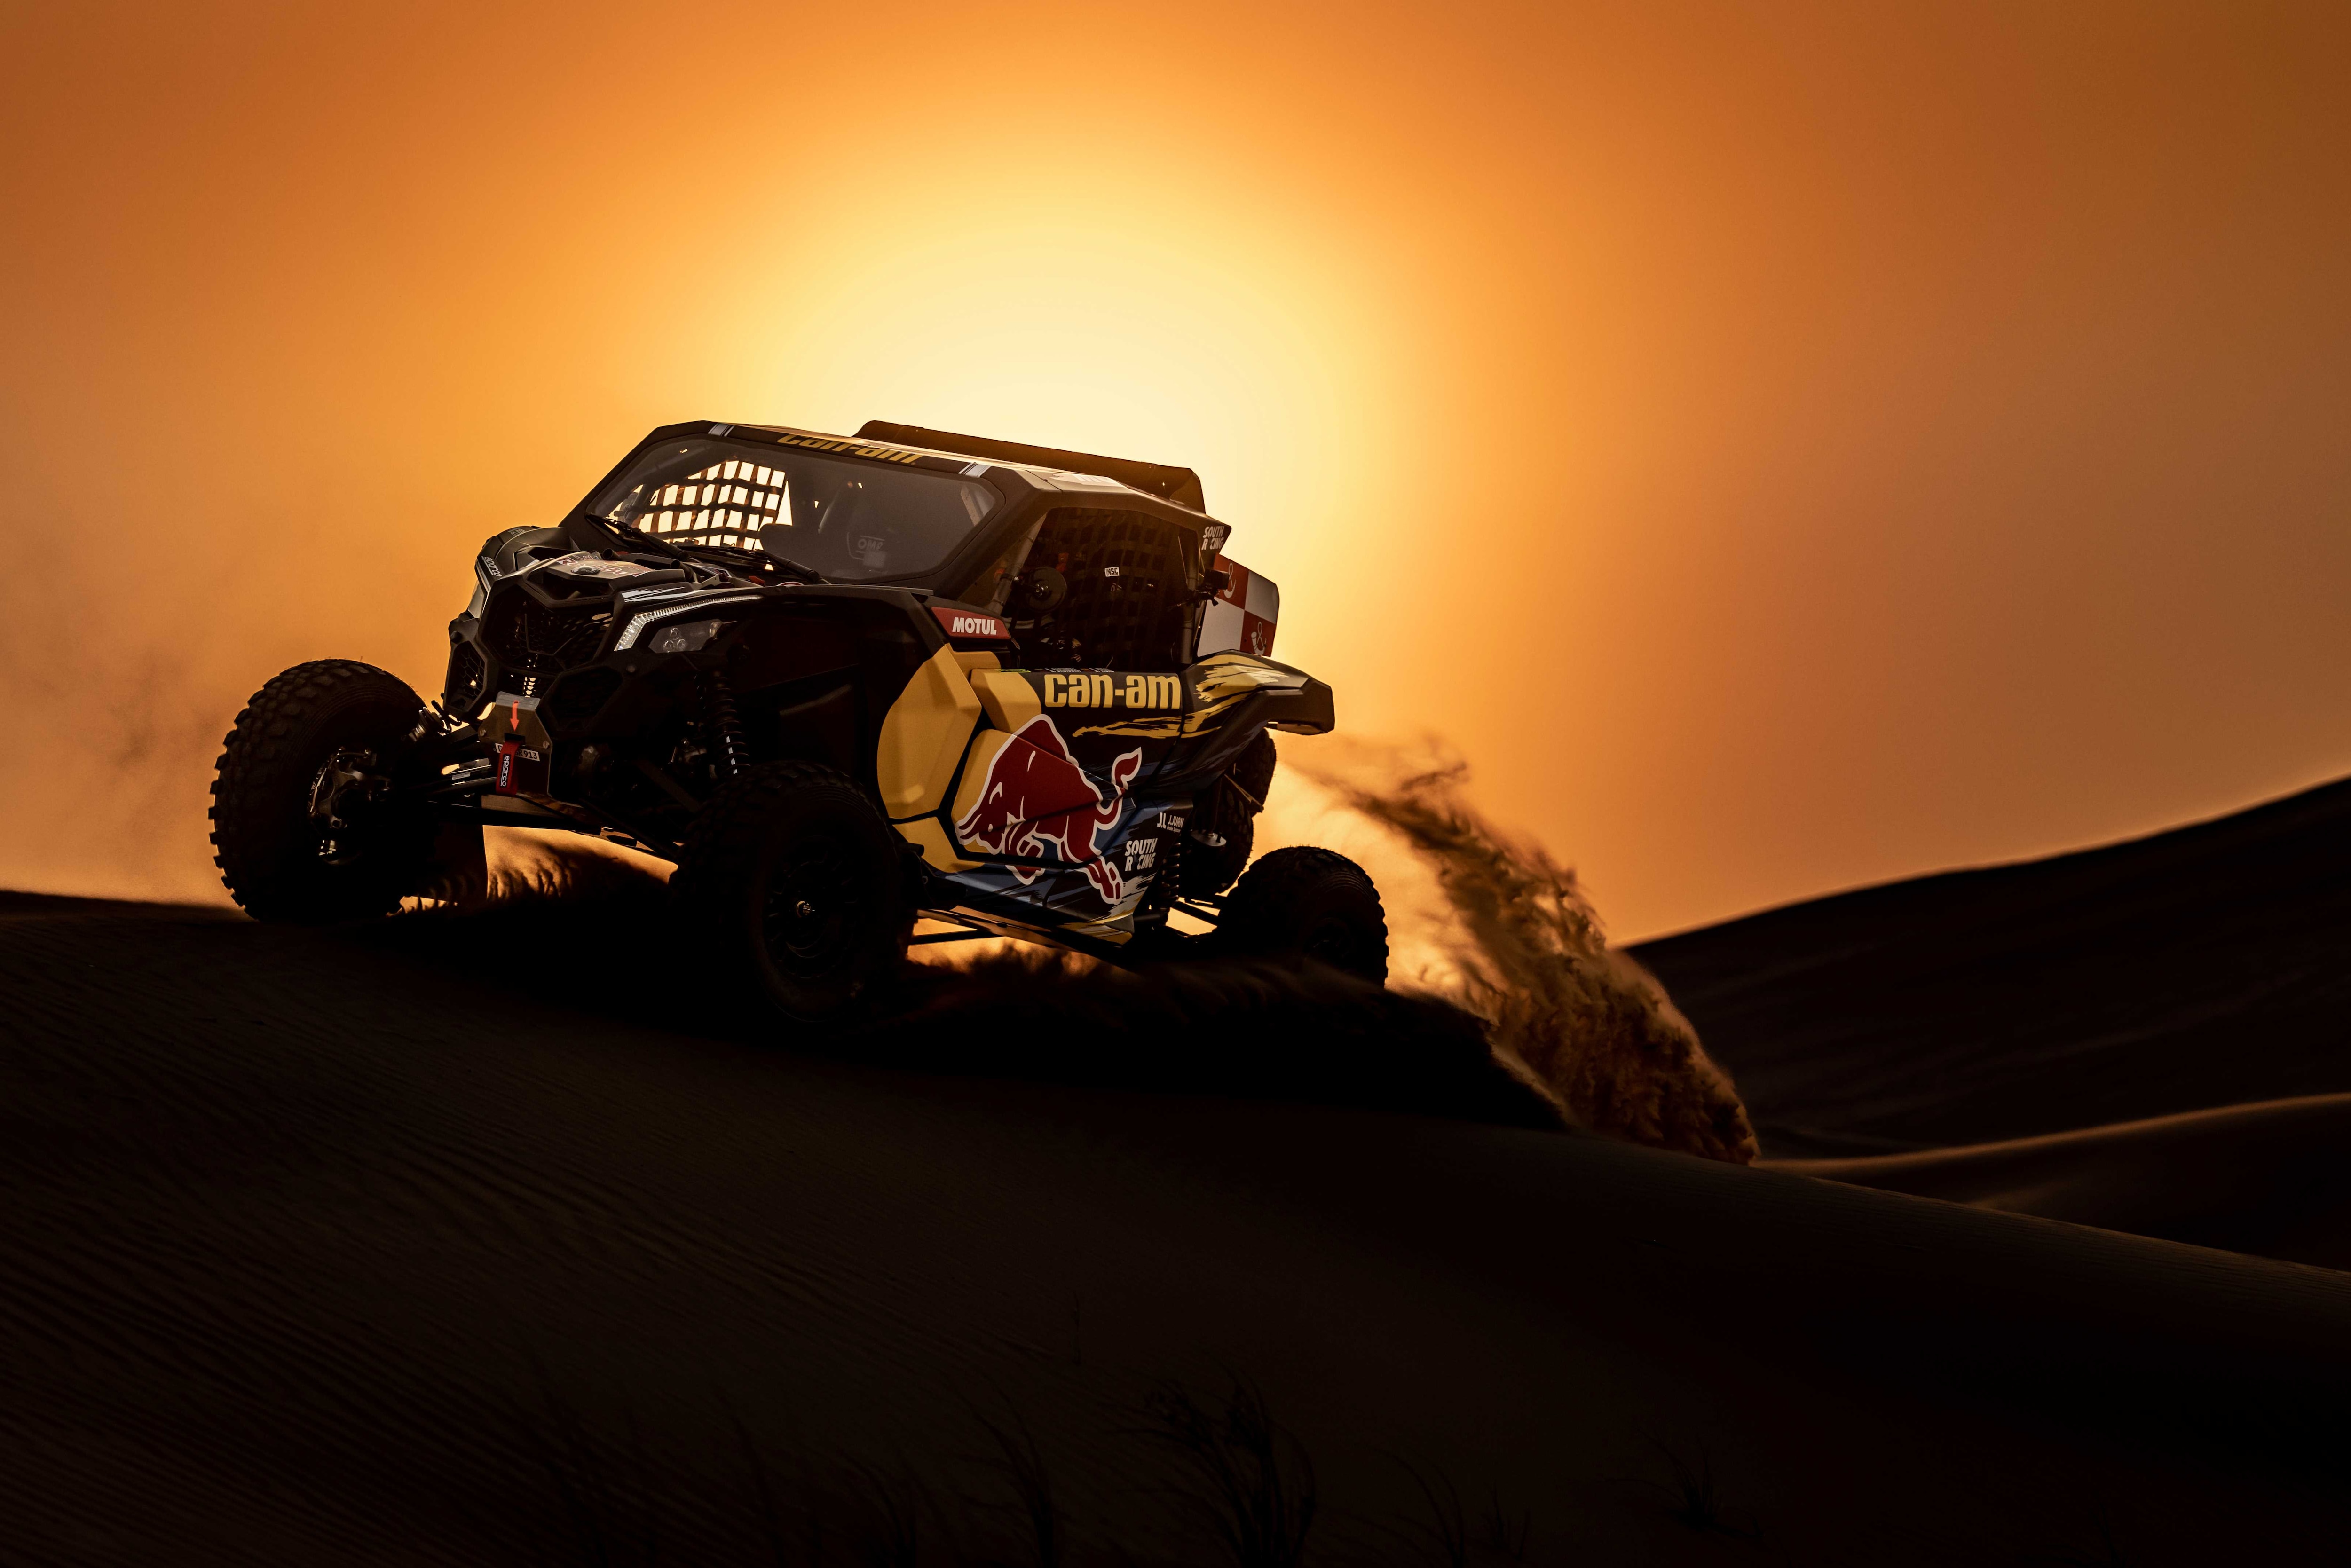 Impresionante imagen del Maverick X3 en el desierto al anochecer